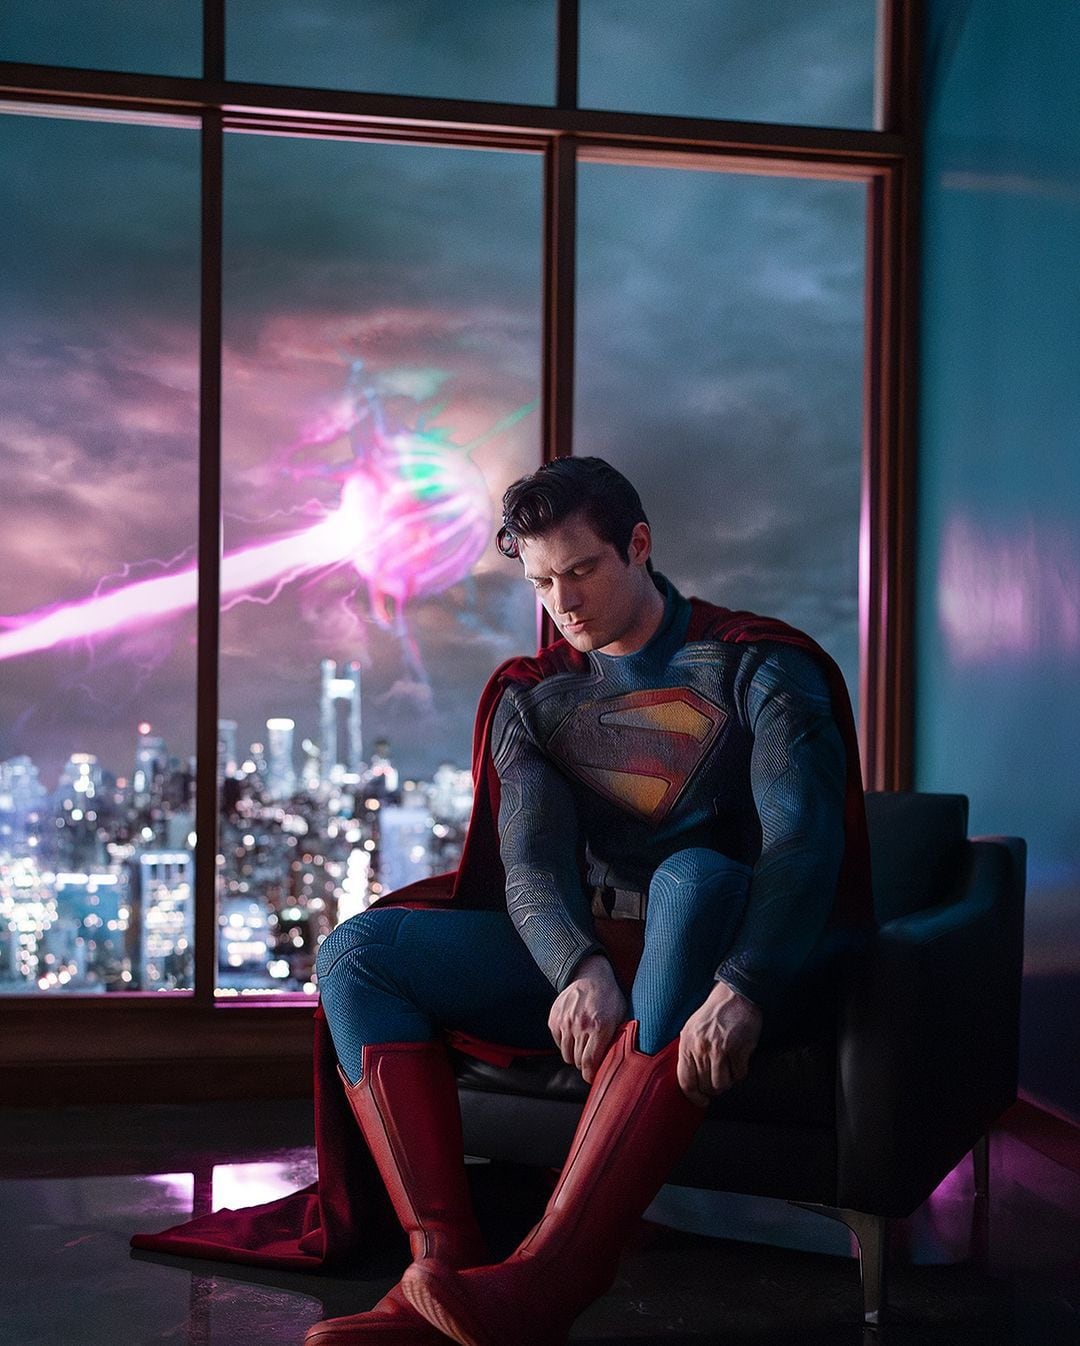 Fotografía divulgada vía Instagram por el cineasta y codirector ejecutivo de DC Studios, James Gunn, en sus redes sociales donde se muestra la primera fotografía de David Corenswet caracterizado como Superman, para la cinta del superhéroe que tiene previsto su estreno el 11 de julio de 2025. EFE/James Gunn/Instagram
